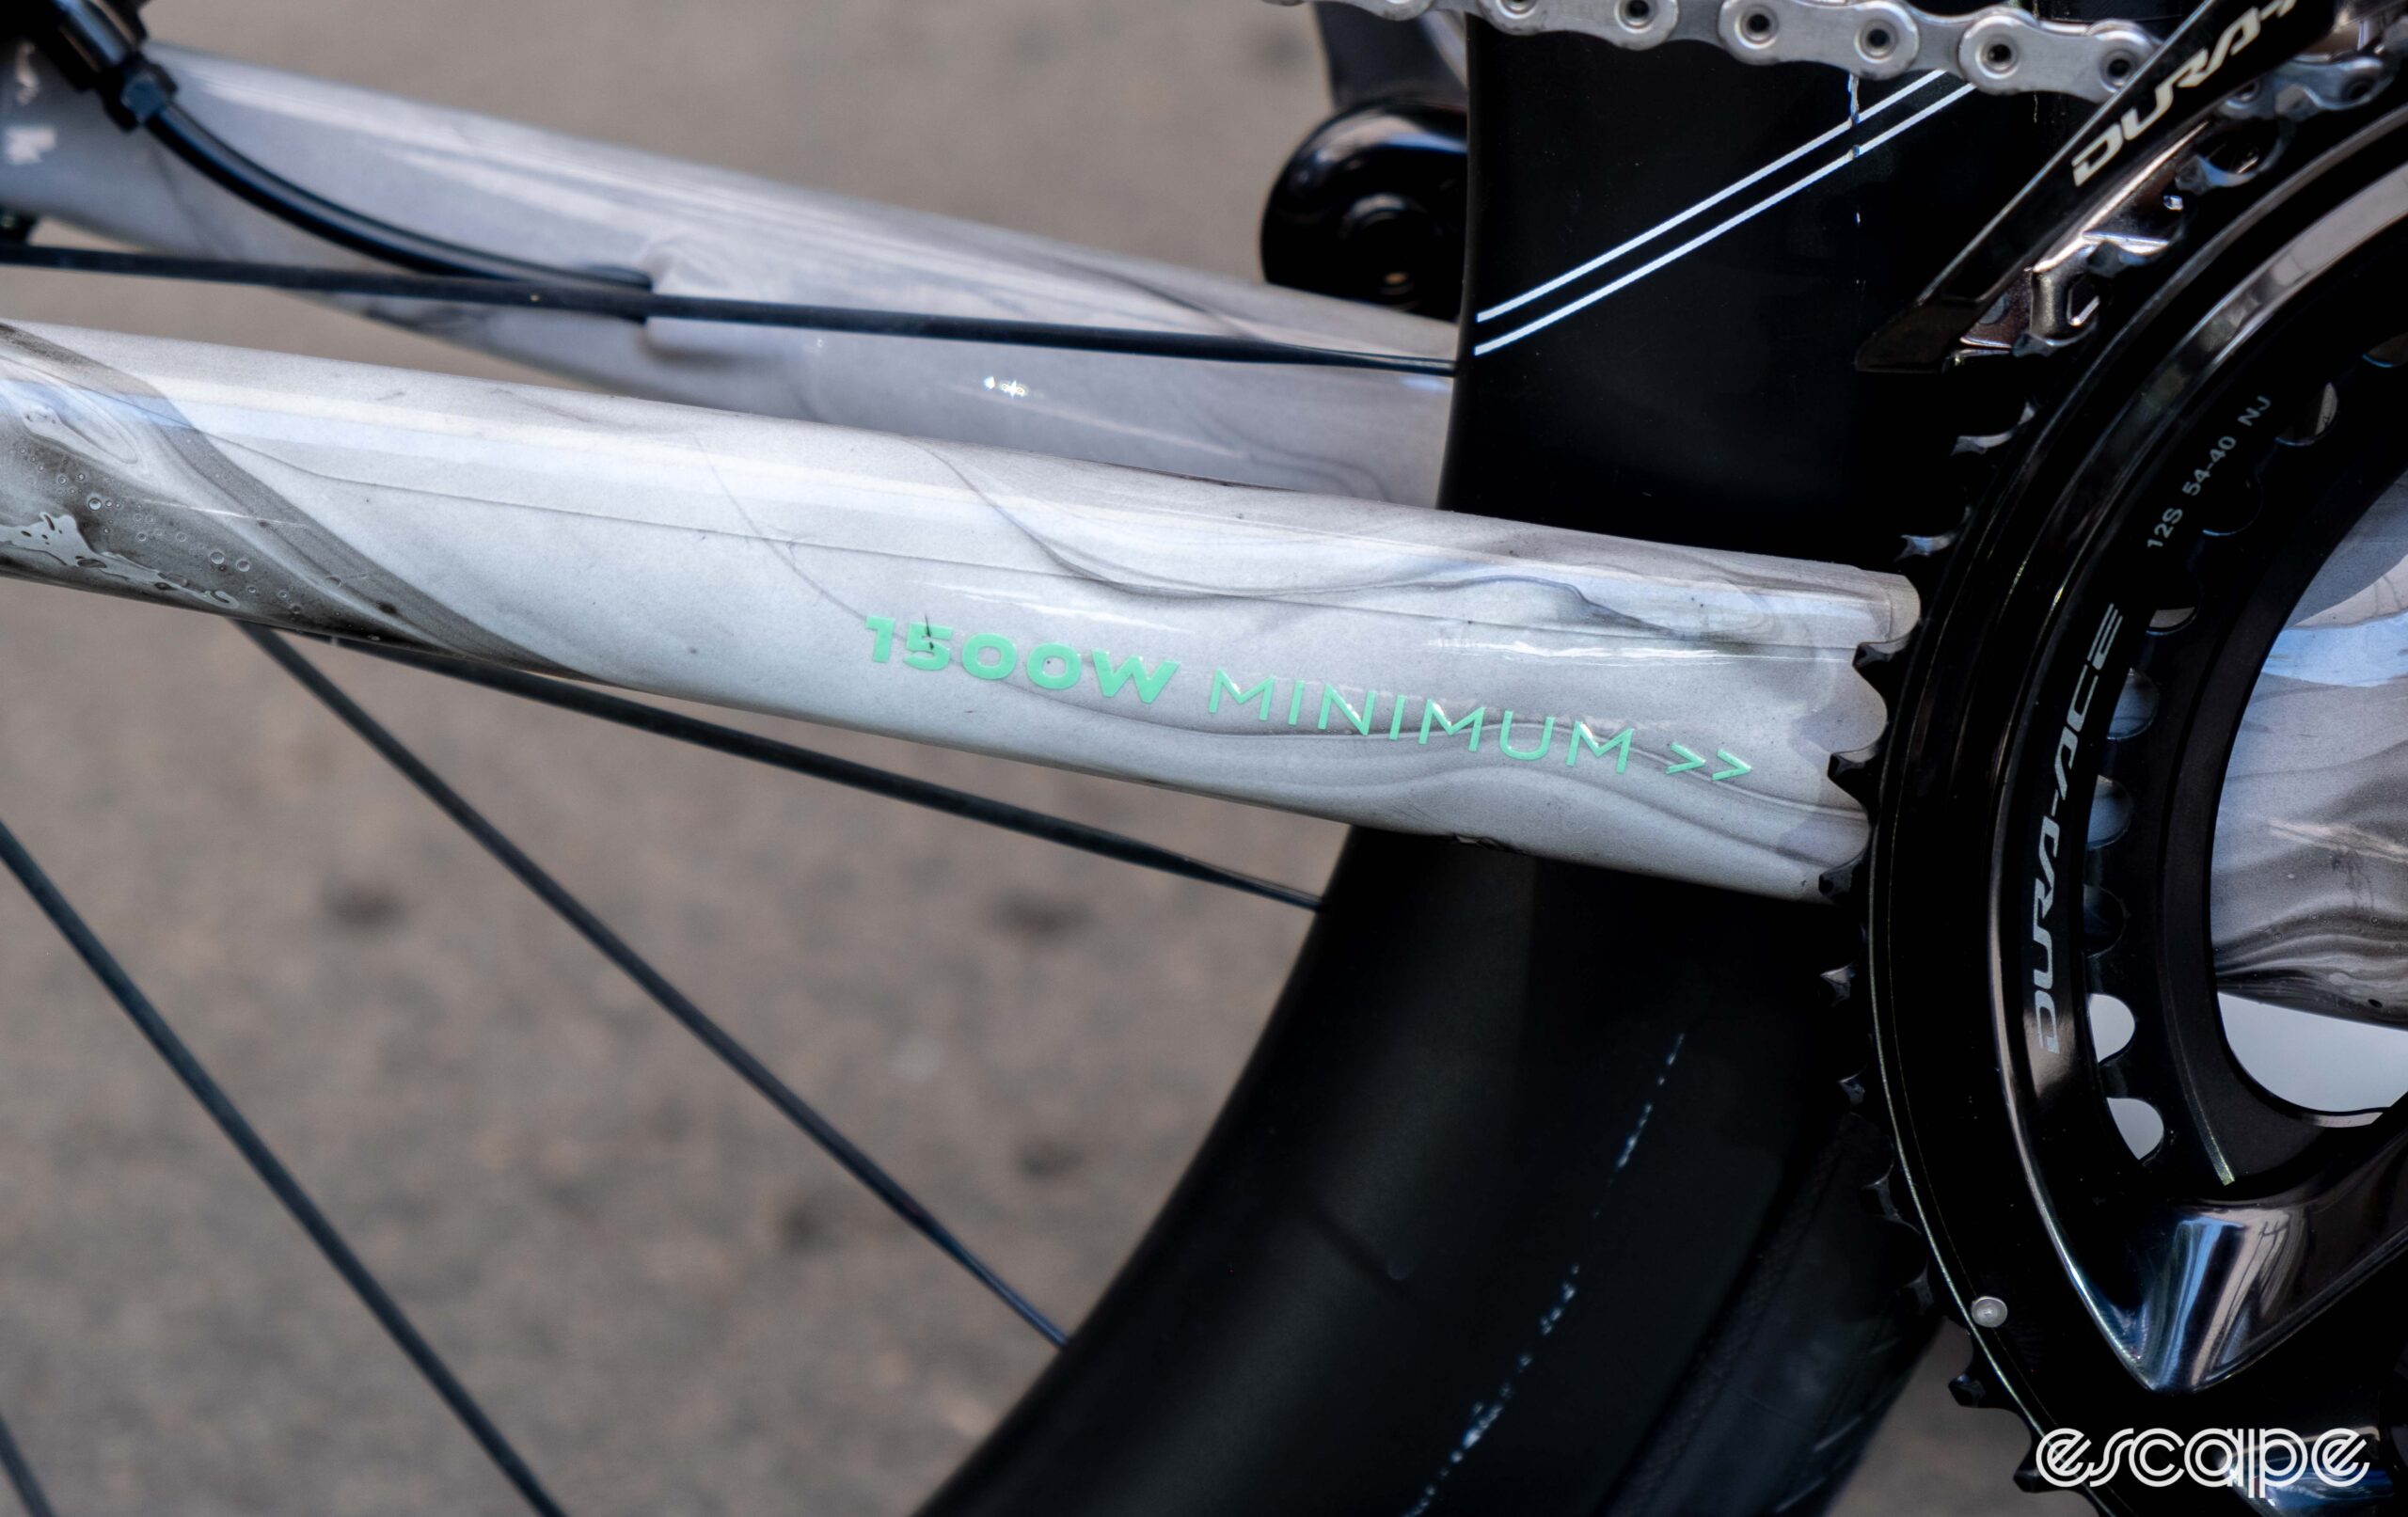 The photo shows Van Rysel's new FCR Pro aero bike chain stay which says "1500 watt minimum"